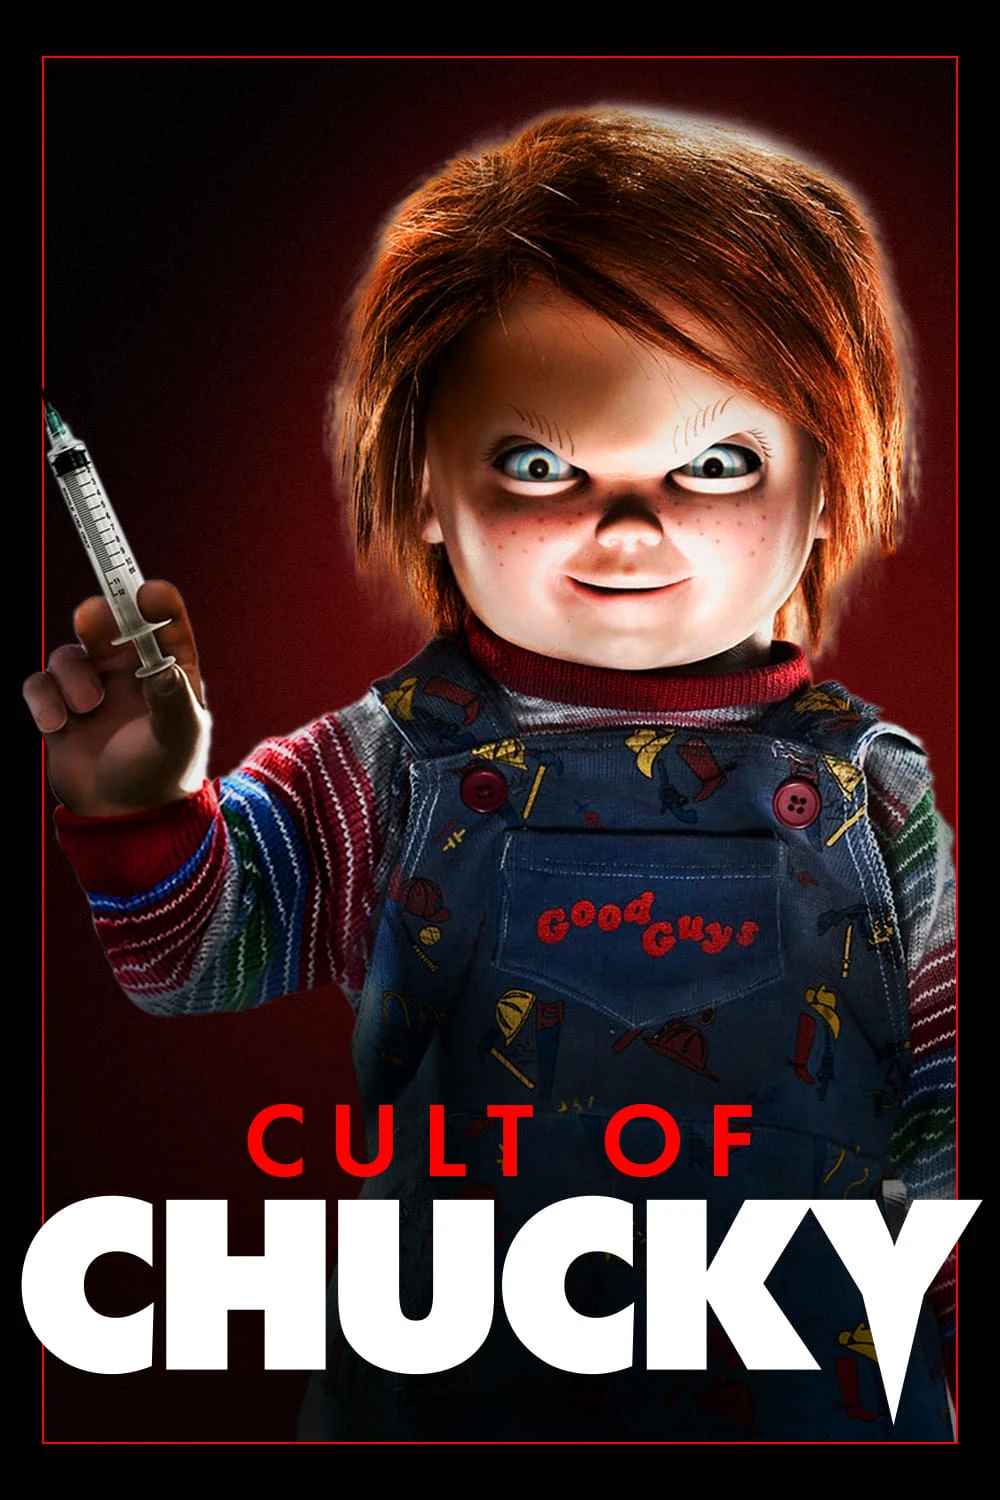 Ma Búp Bê 7: Sự Tôn Sùng Chucky | Cult Of Chucky (2017)